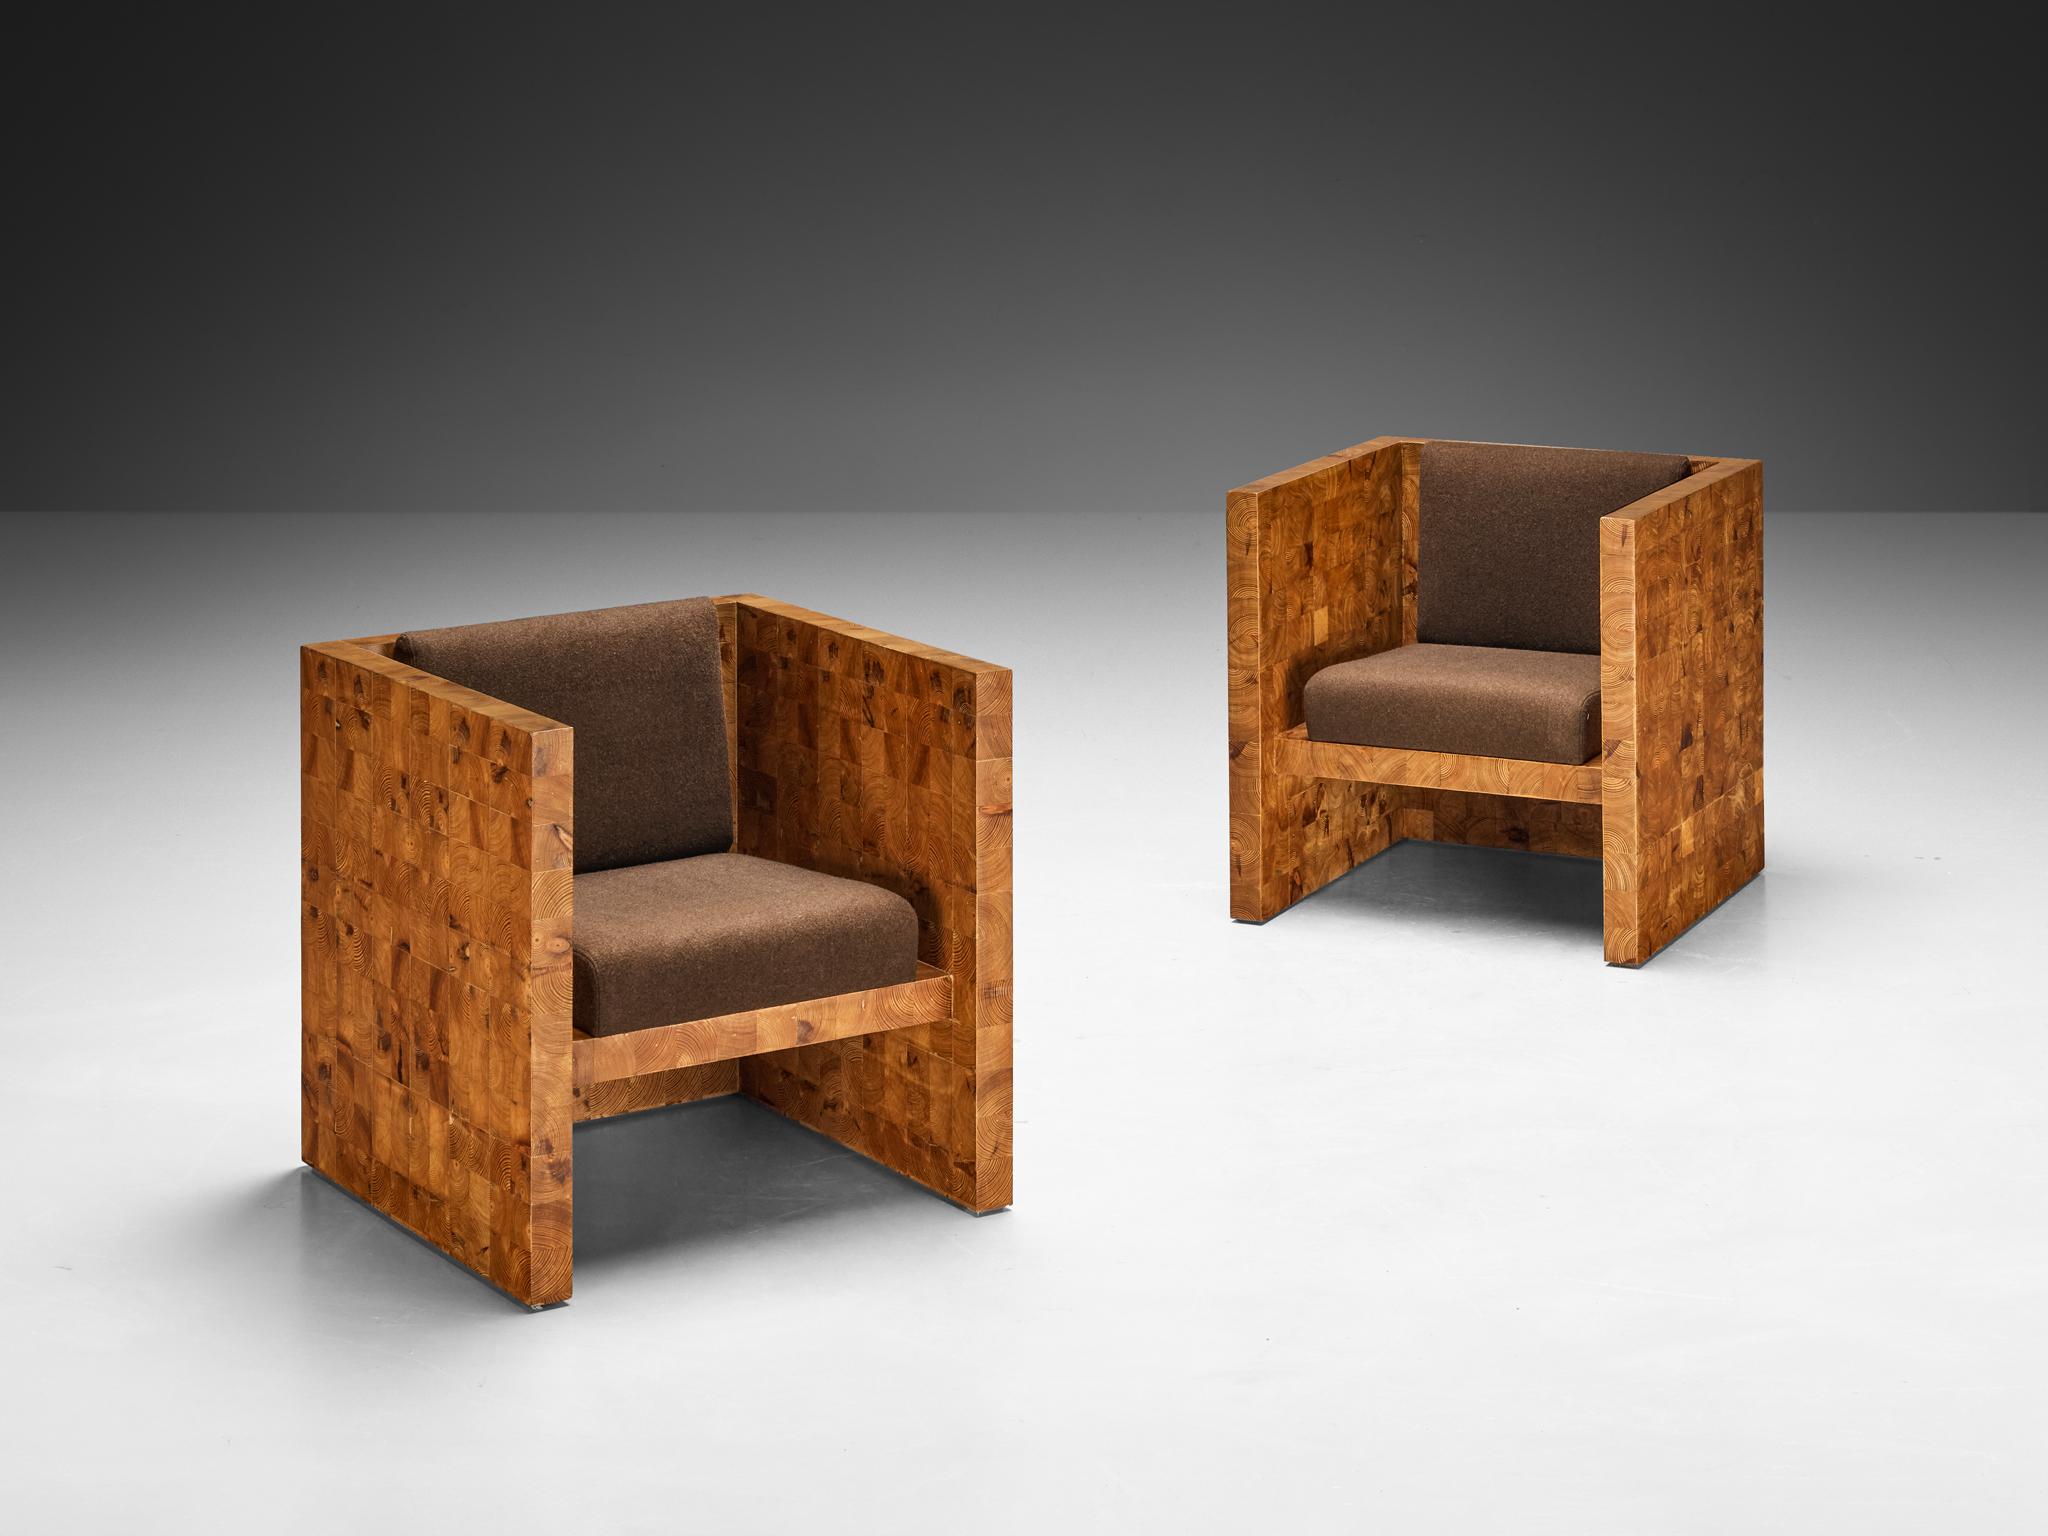 Paire de chaises longues, pin, tissu, Europe, années 1980

Un ensemble distinctif de fauteuils qui respirent la robustesse, caractérisé par une silhouette robuste et substantielle aux contours distincts à angles vifs. La chaise est fabriquée selon